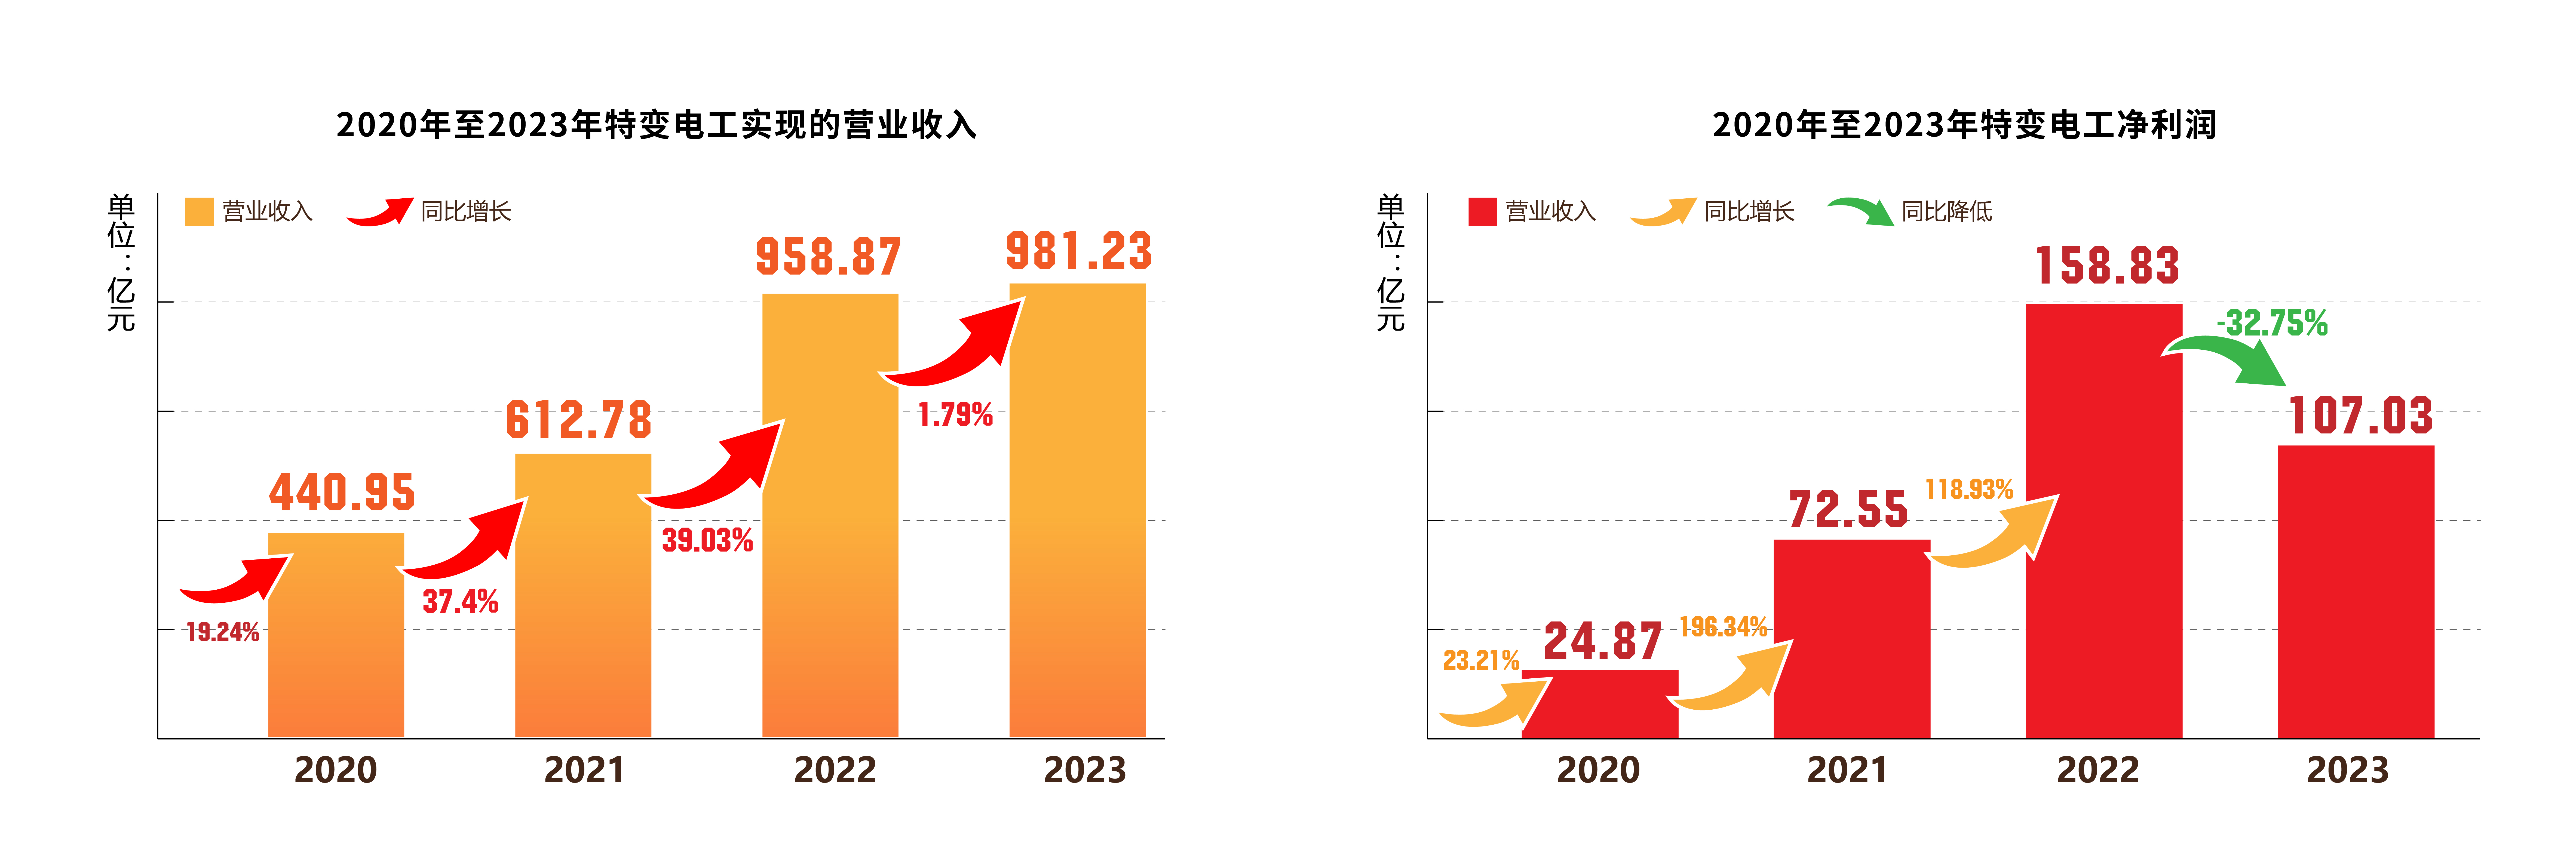 特变电工2023年净利润下滑32.75% 旗下新特能源IPO过会已逾半年